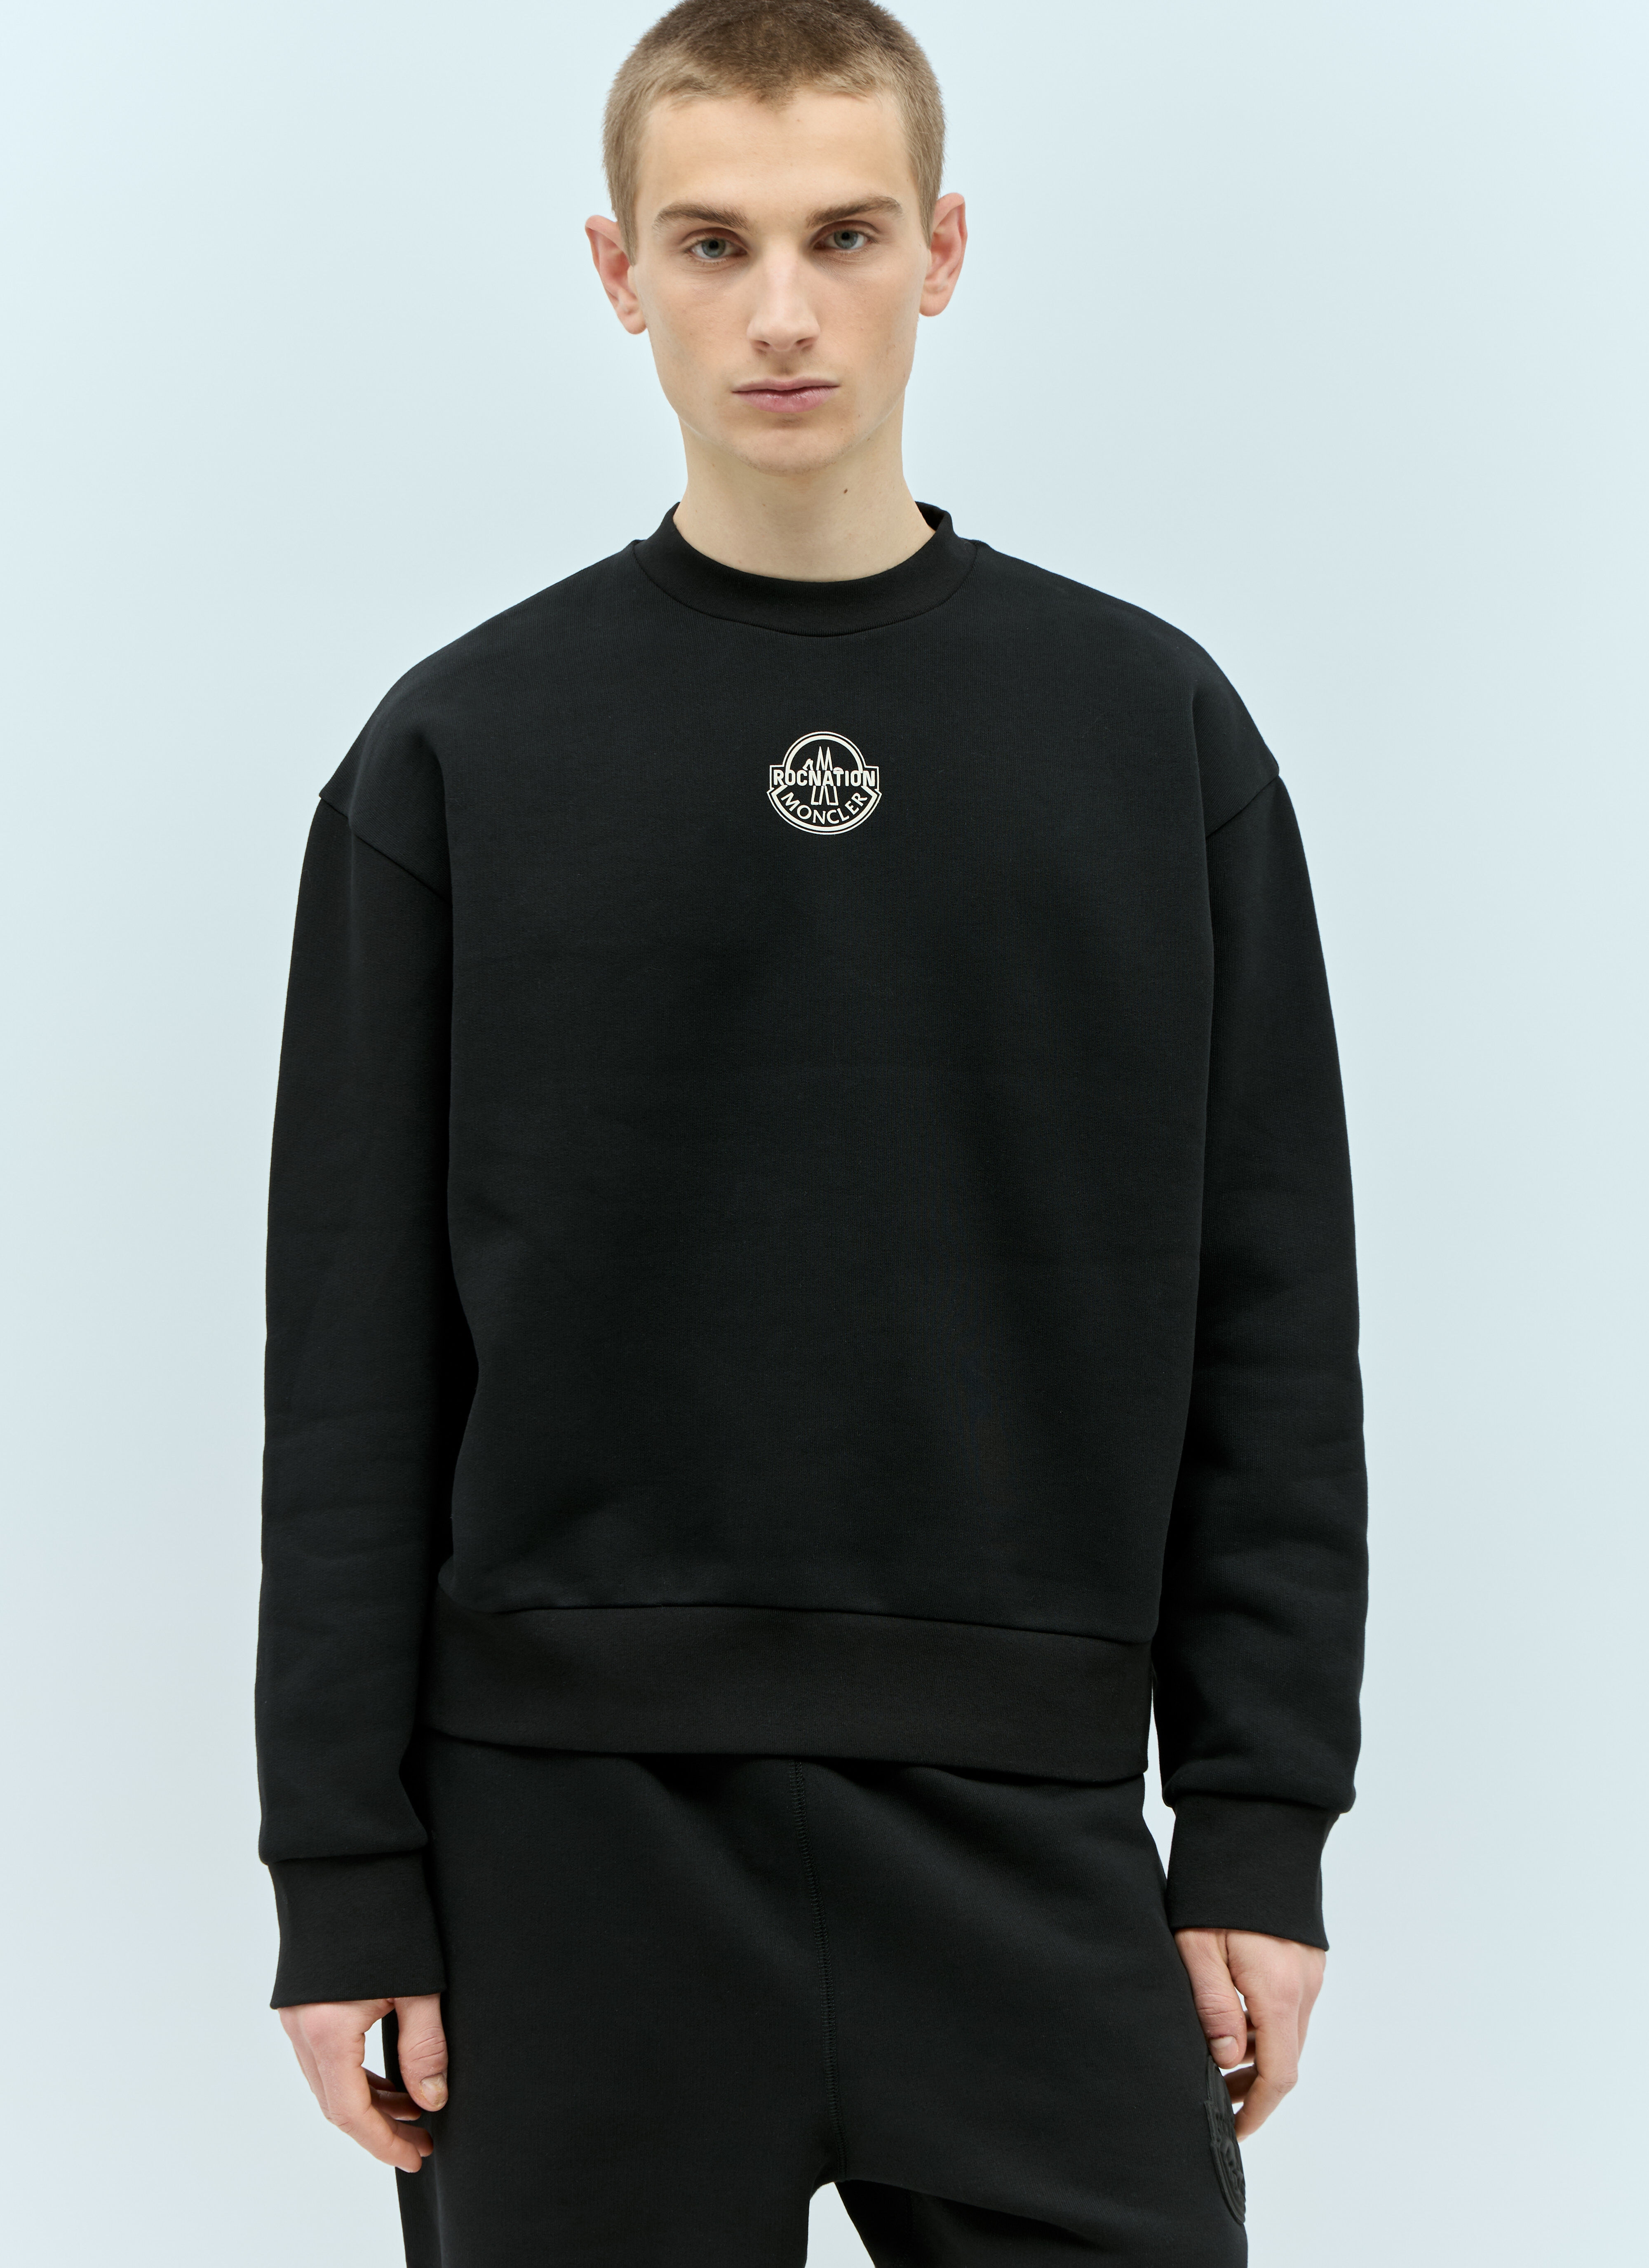 Moncler x Roc Nation designed by Jay-Z 徽标贴花运动衫 黑色 mrn0156002